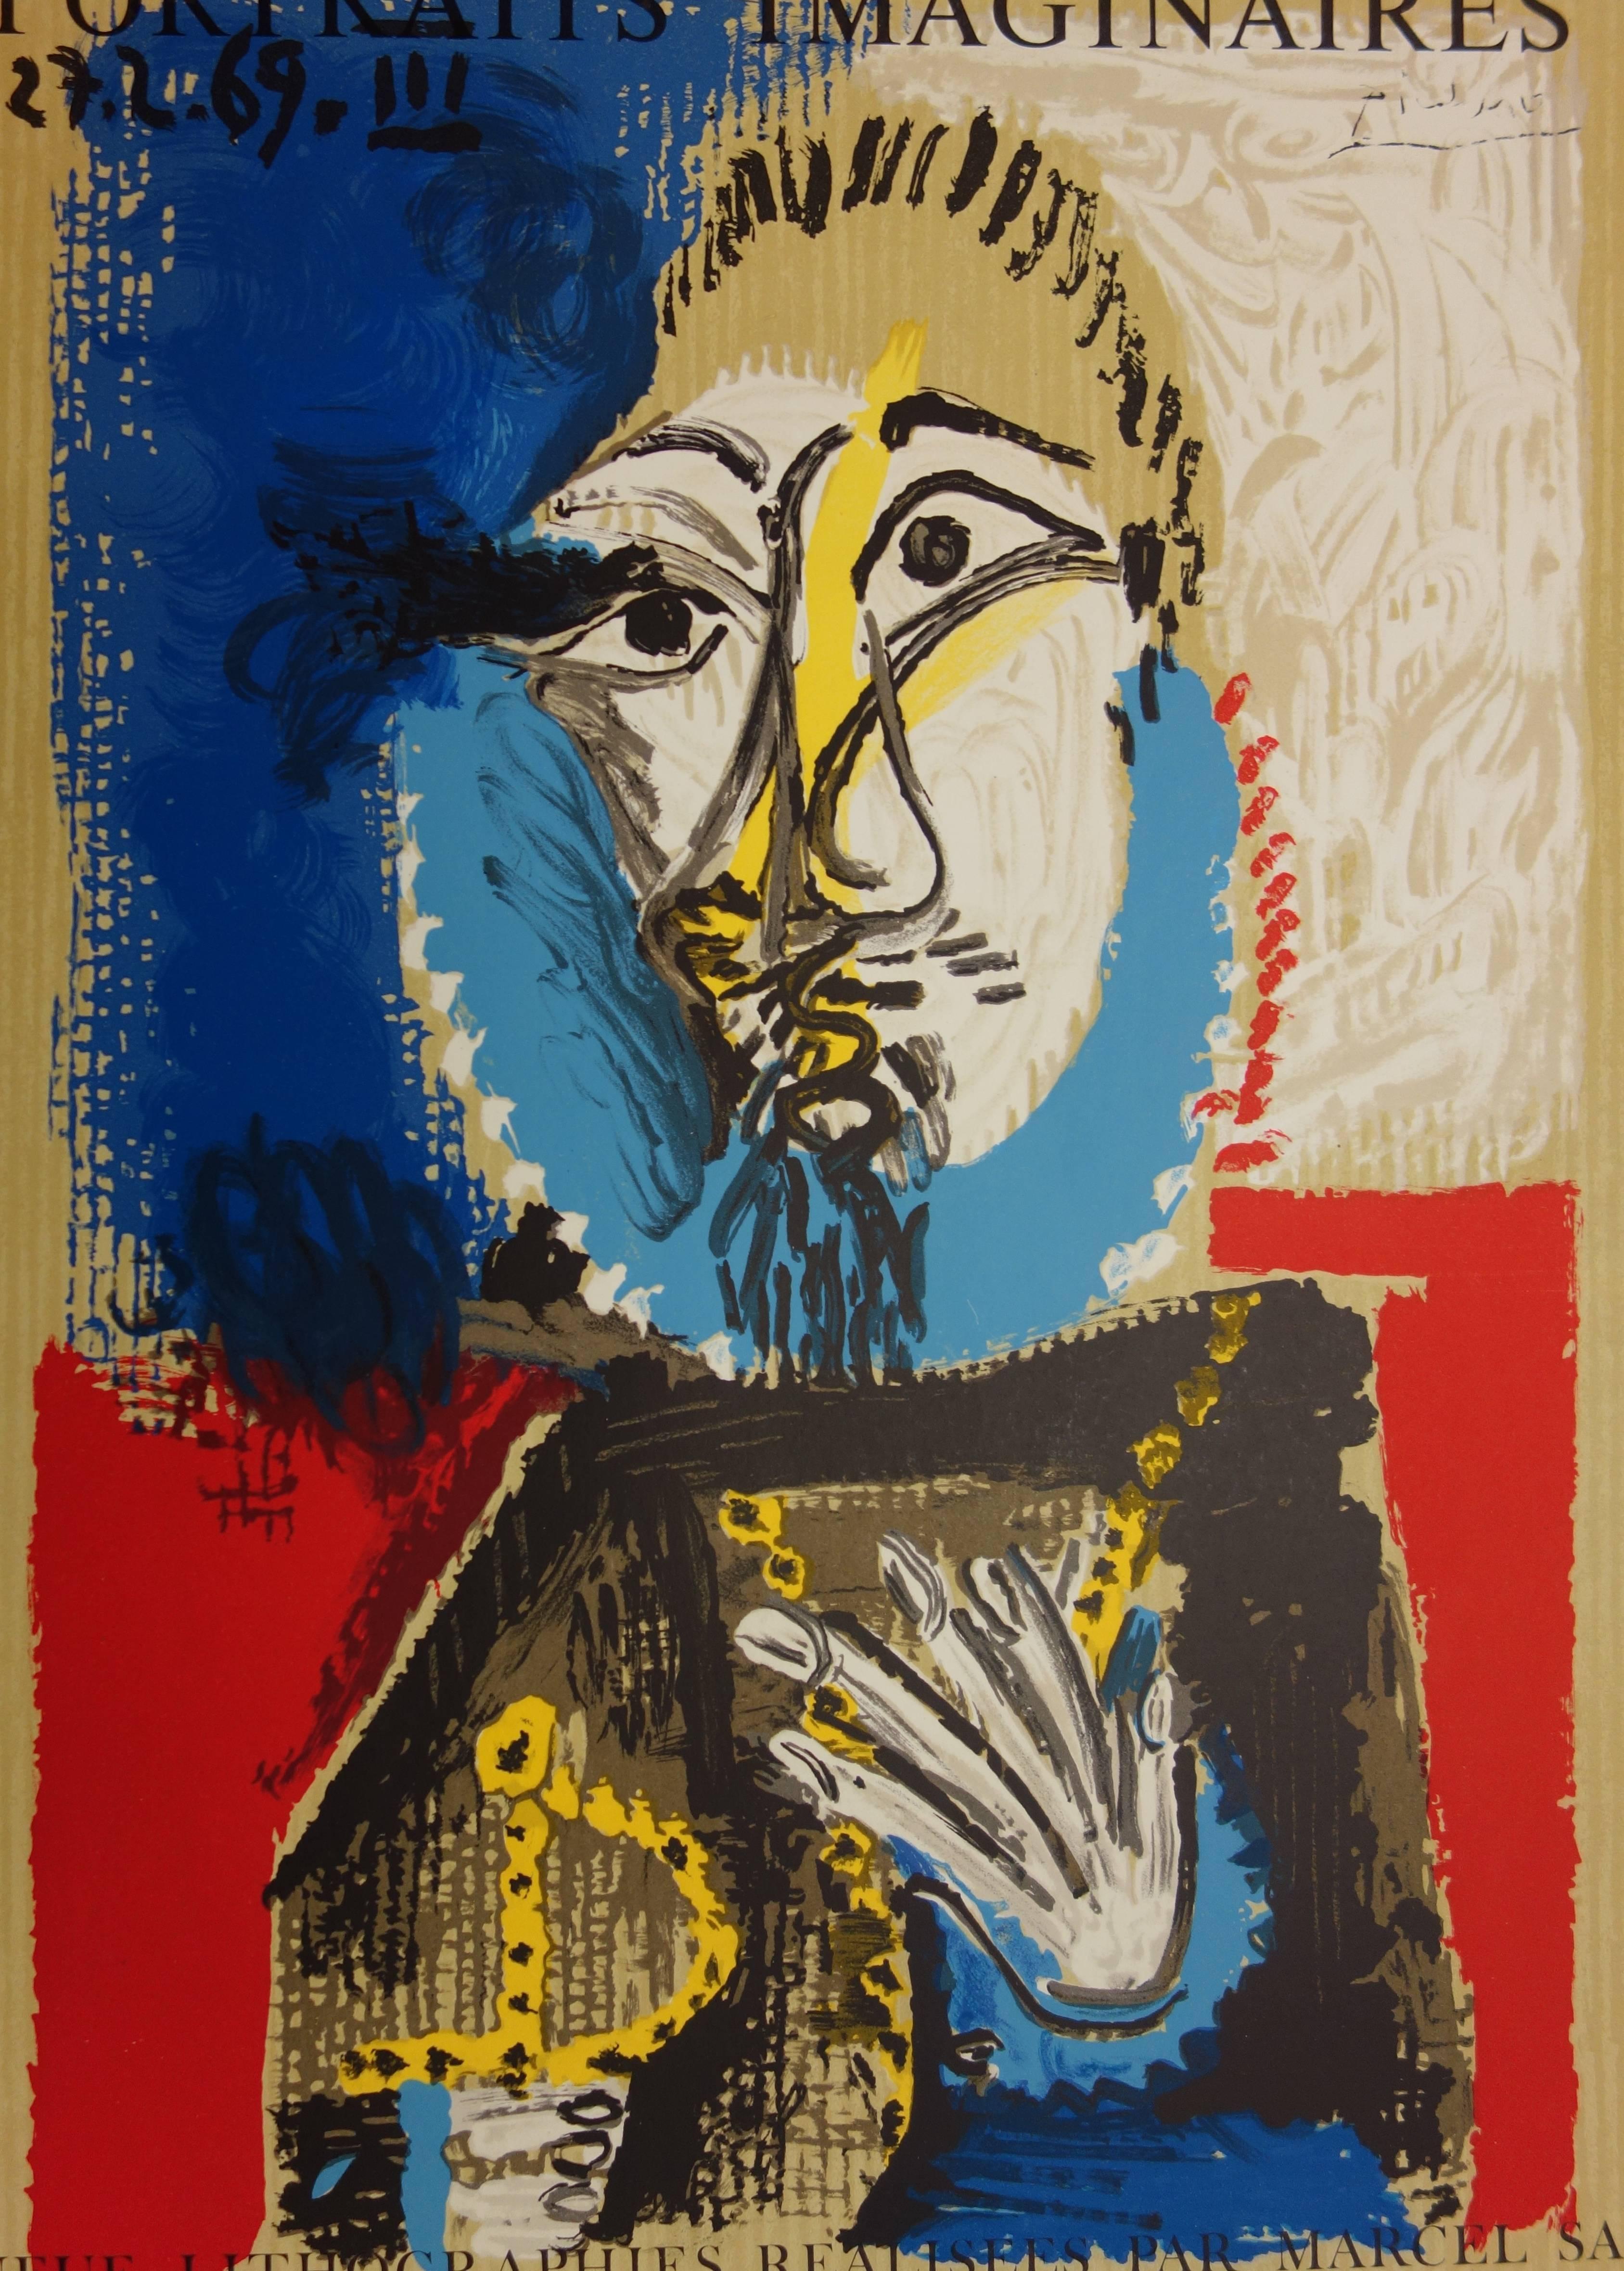 Affiche de l'exposition « Imaginary Portraits » ( Portraits imaginaires) : Homme avec une barbe - Lithographie - Cubisme Print par (after) Pablo Picasso